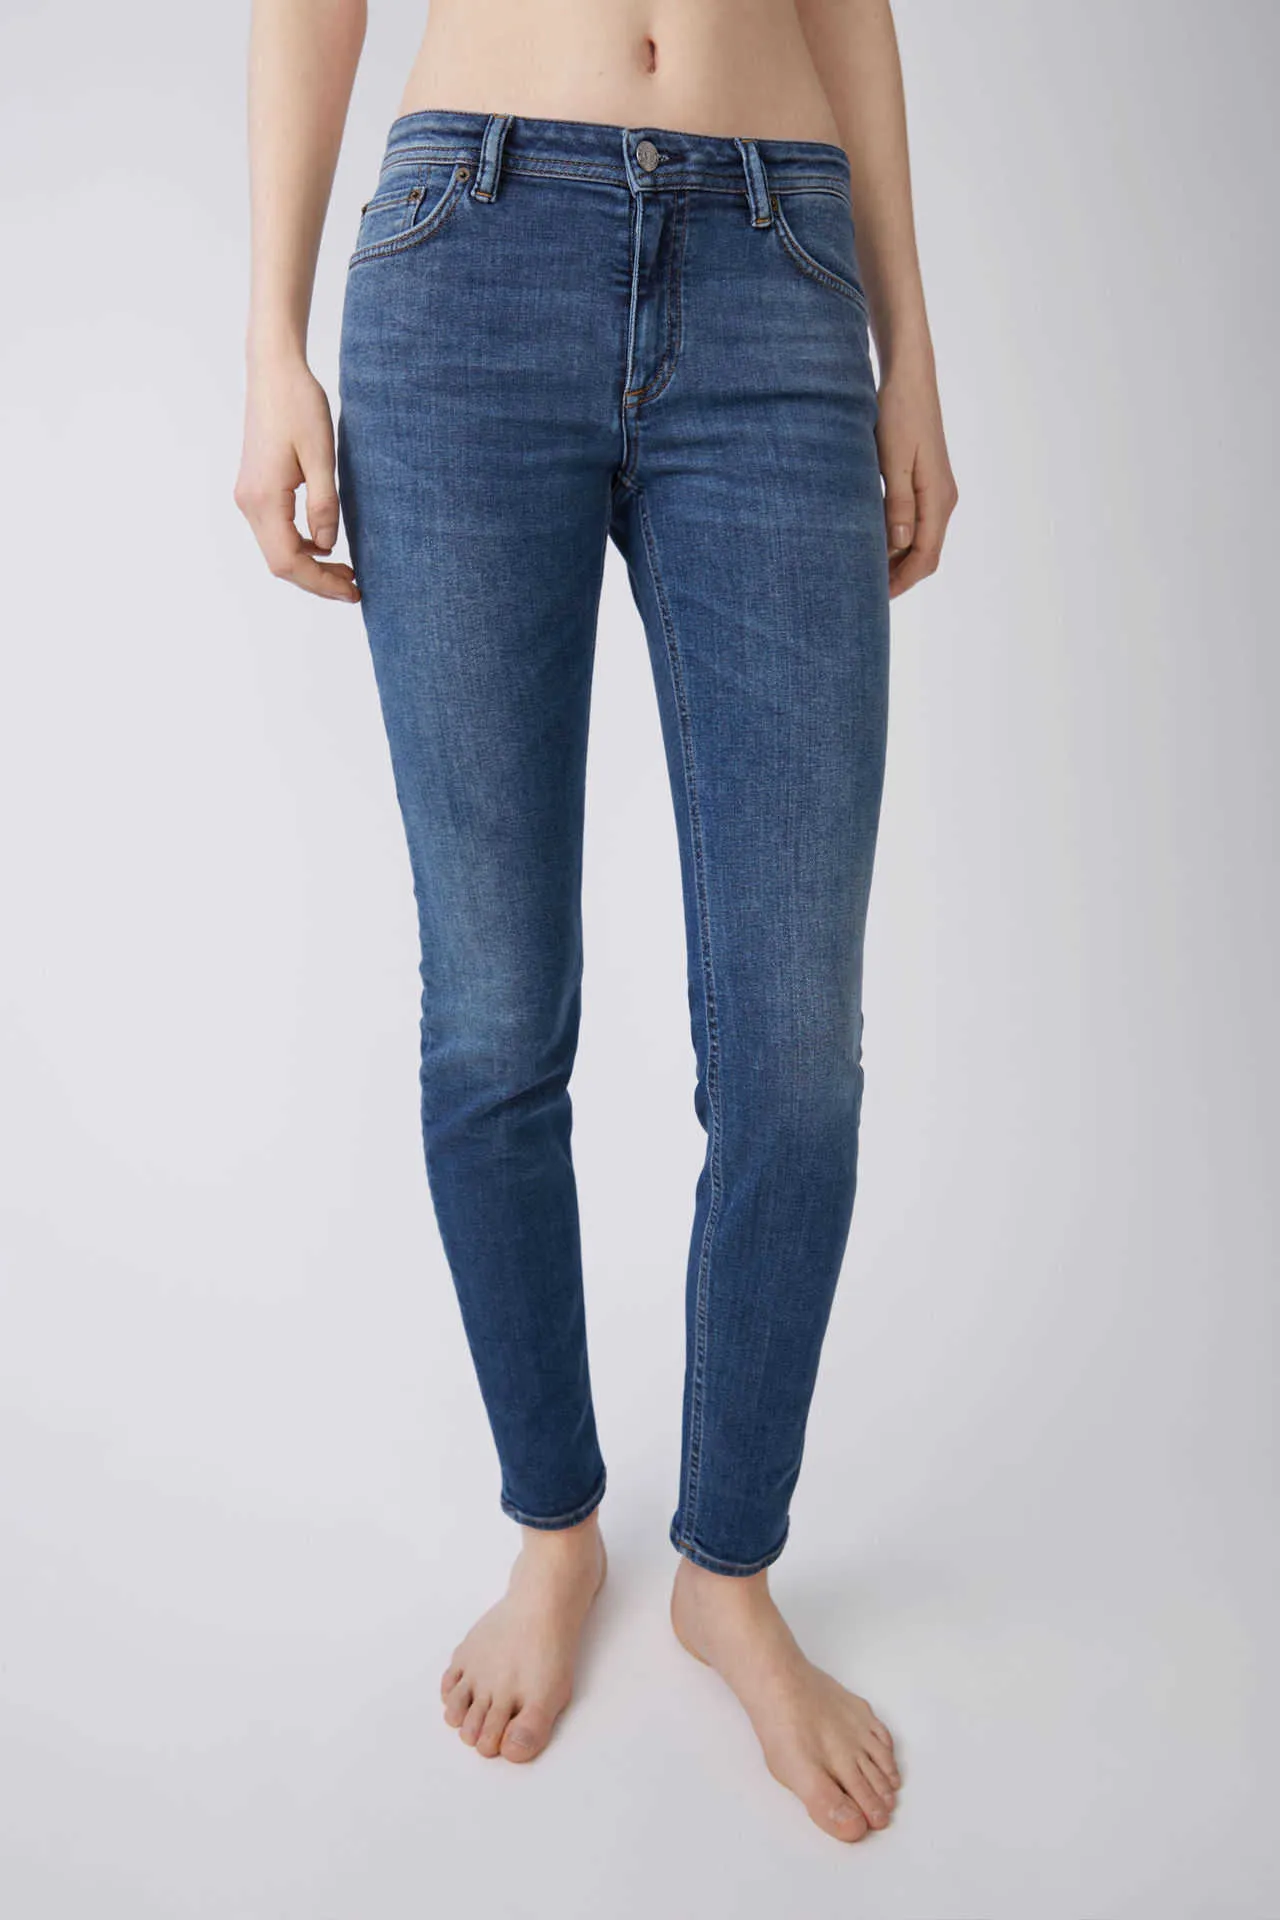 Kvinnors Jeans AC Sweden Samma Skinny Tricolor Non Fleece / Medium Waist Tight Små Fot Denim Byxor För Kvinnor